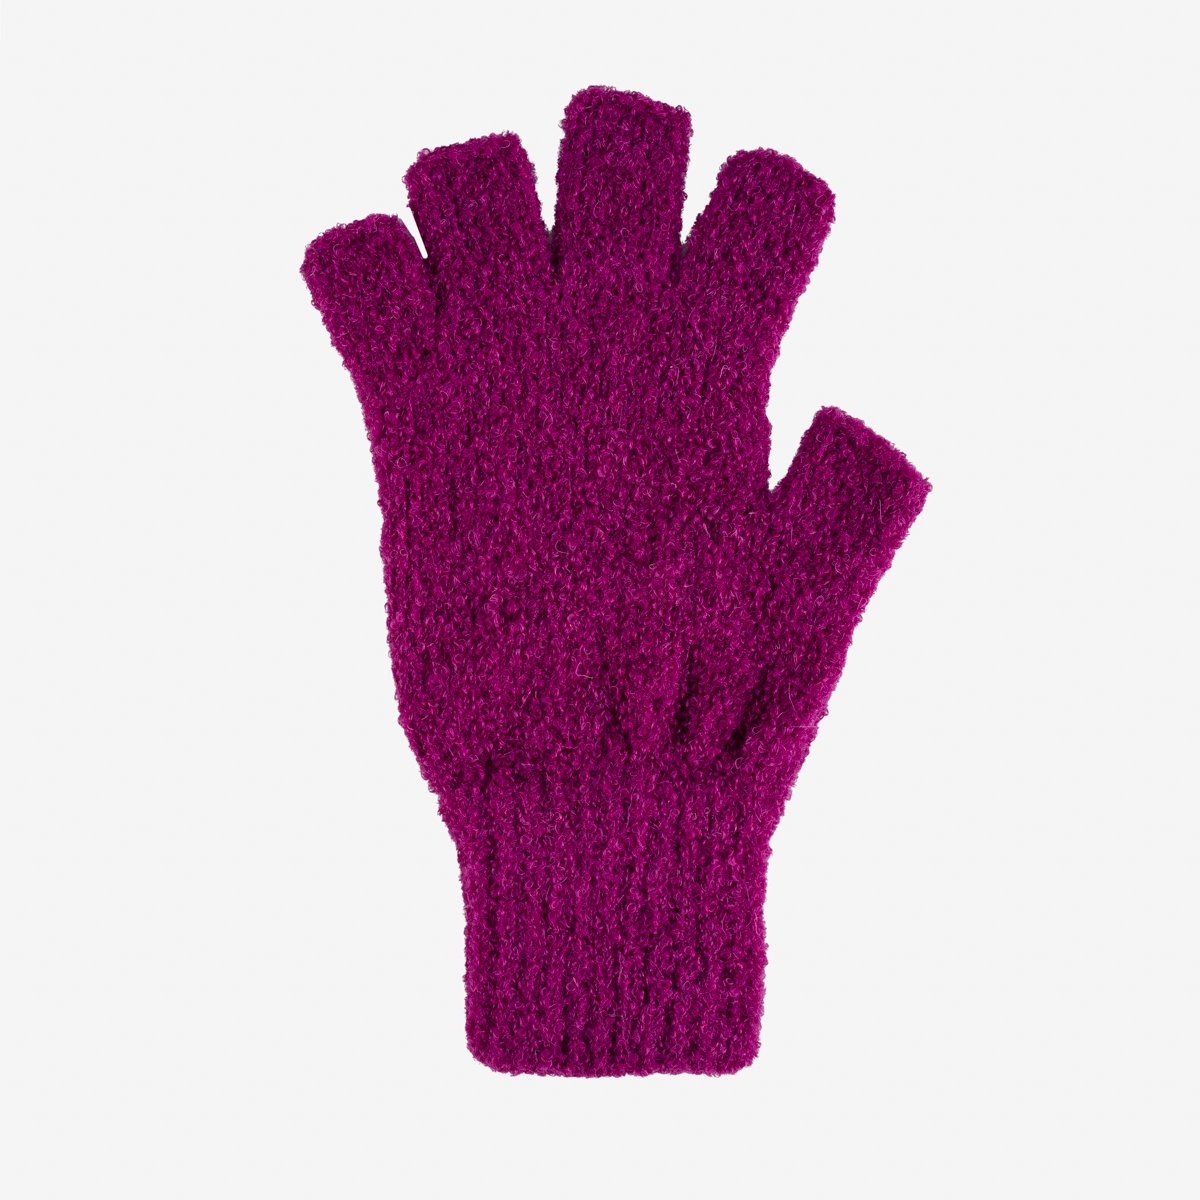 DEC-GLV-MAG Decka Fingerless Gloves - Magenta - 1